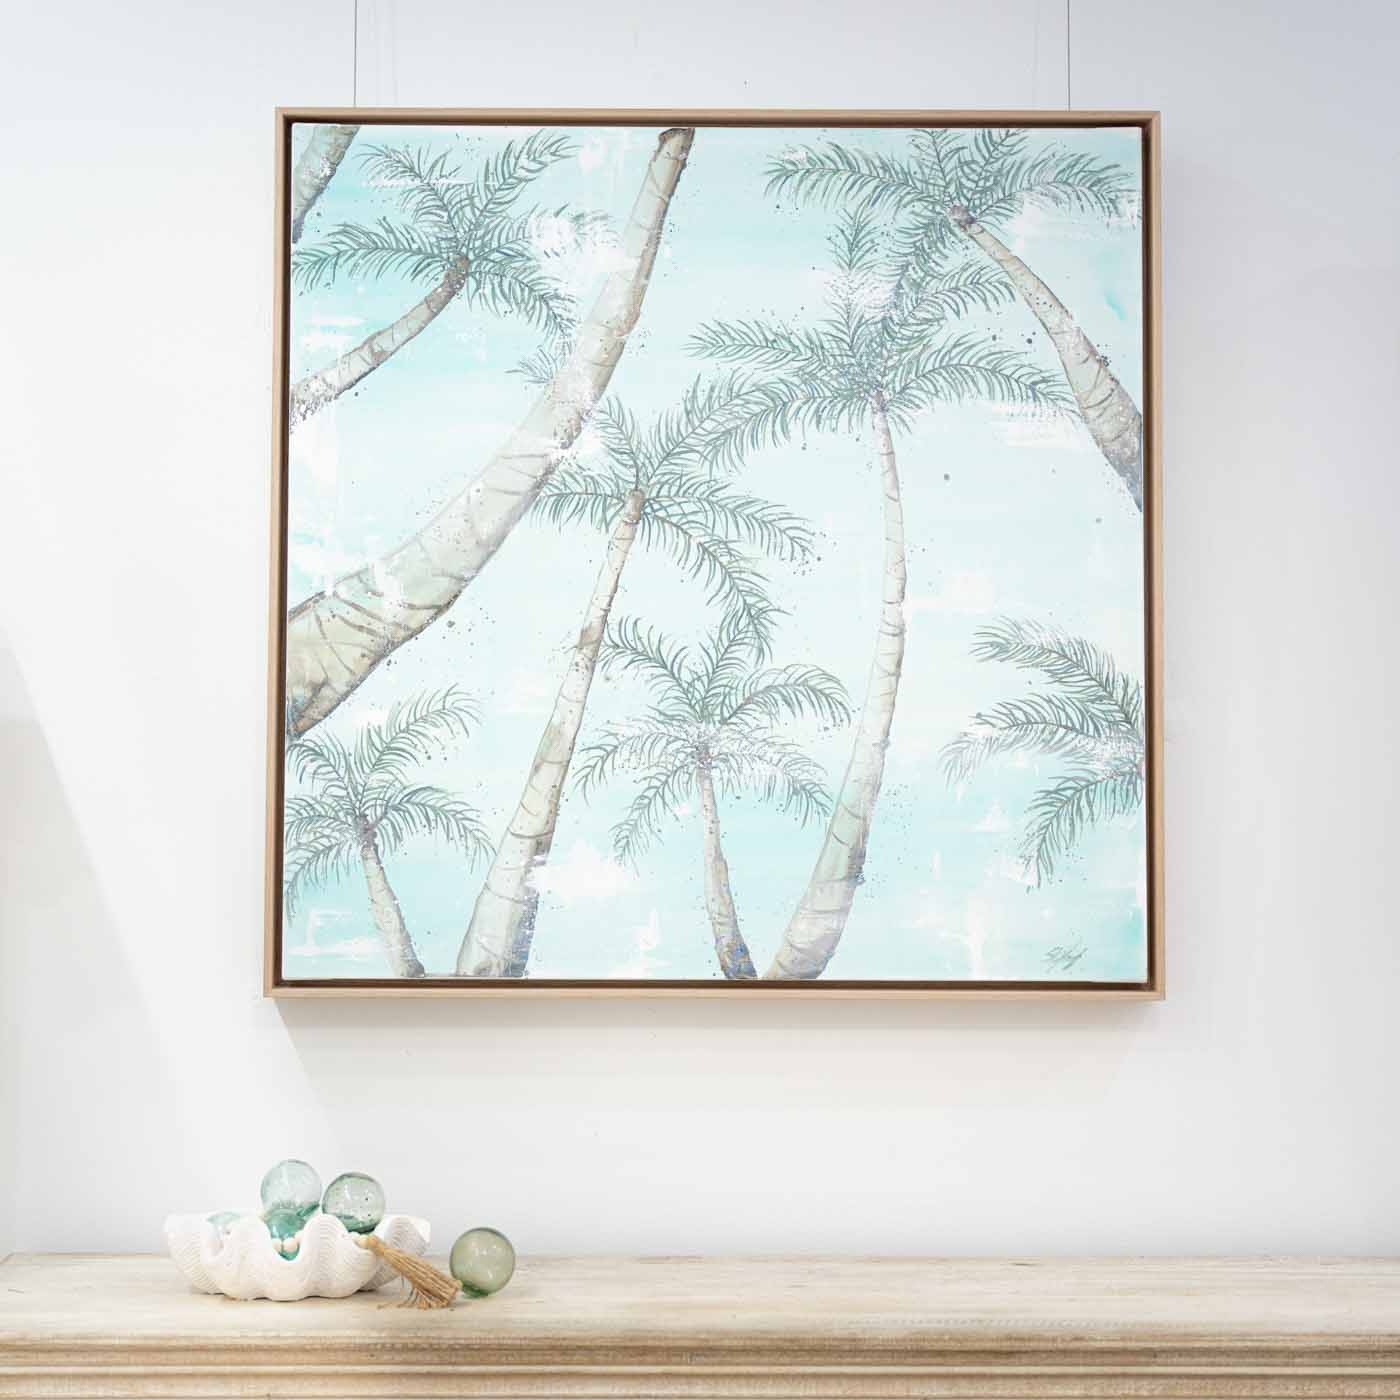 Port Douglas Palm Trees Framed Original Artwork hung on wall